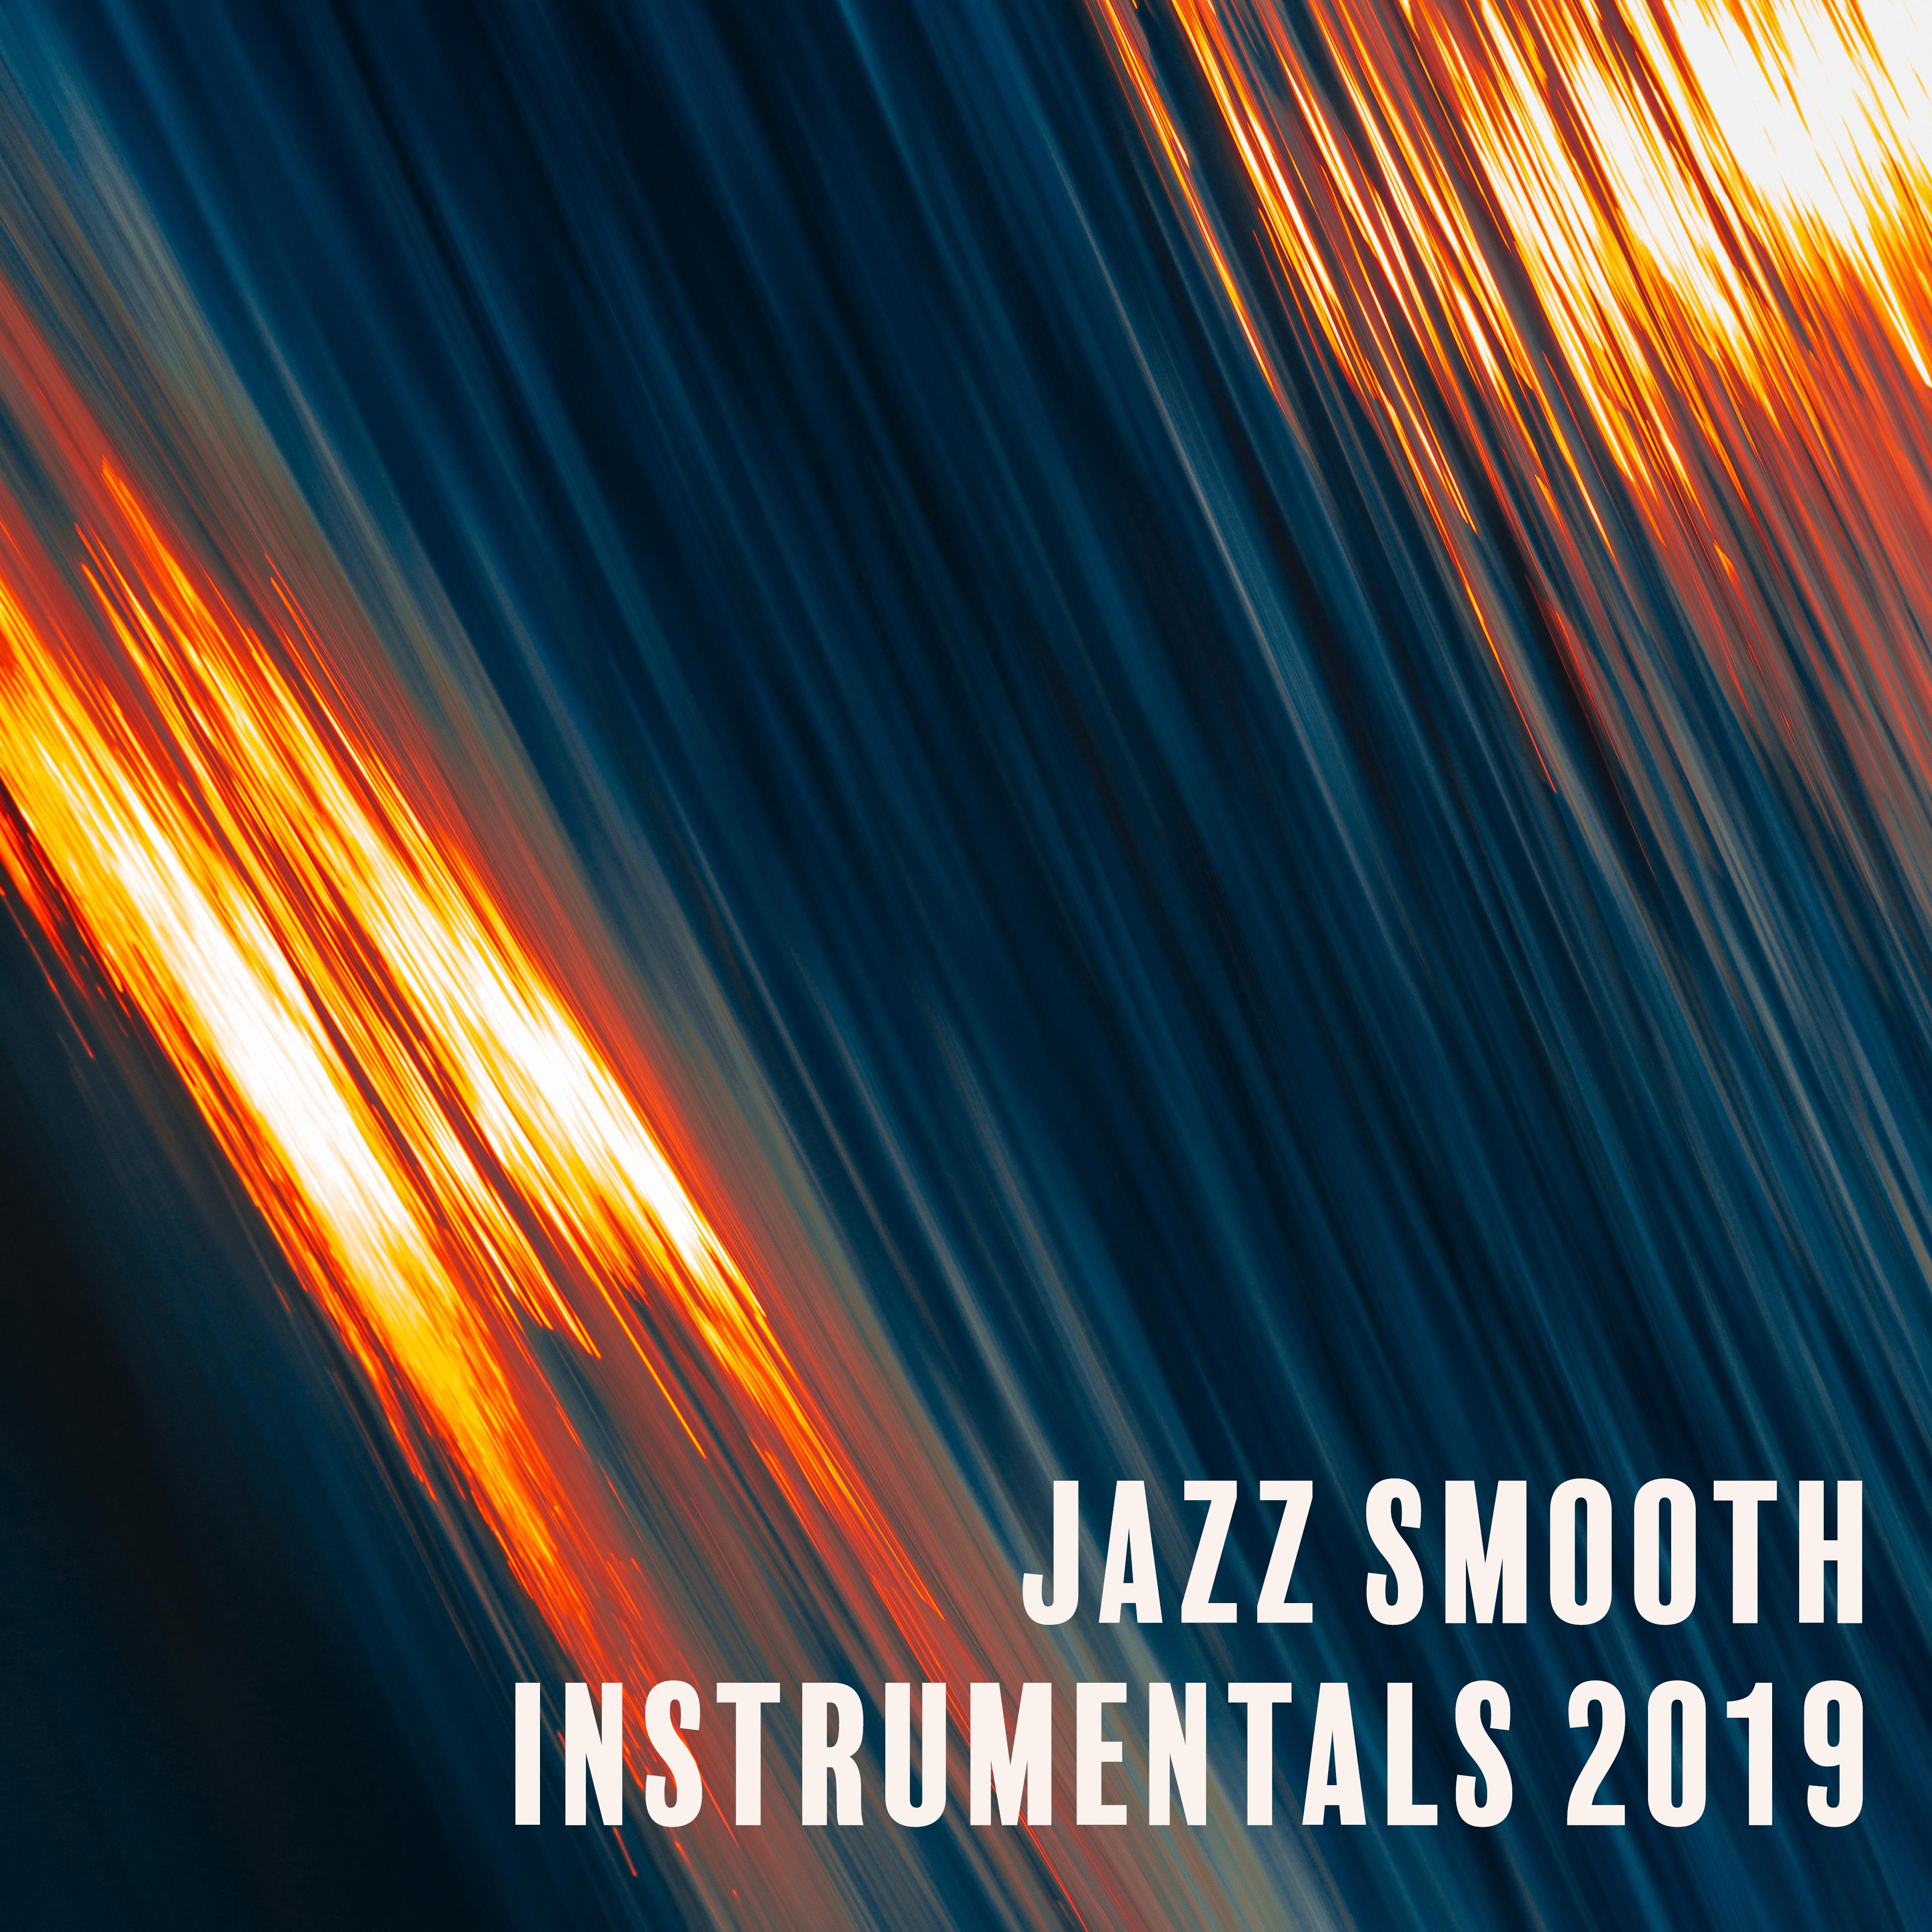 Jazz Smooth Instrumentals 2019